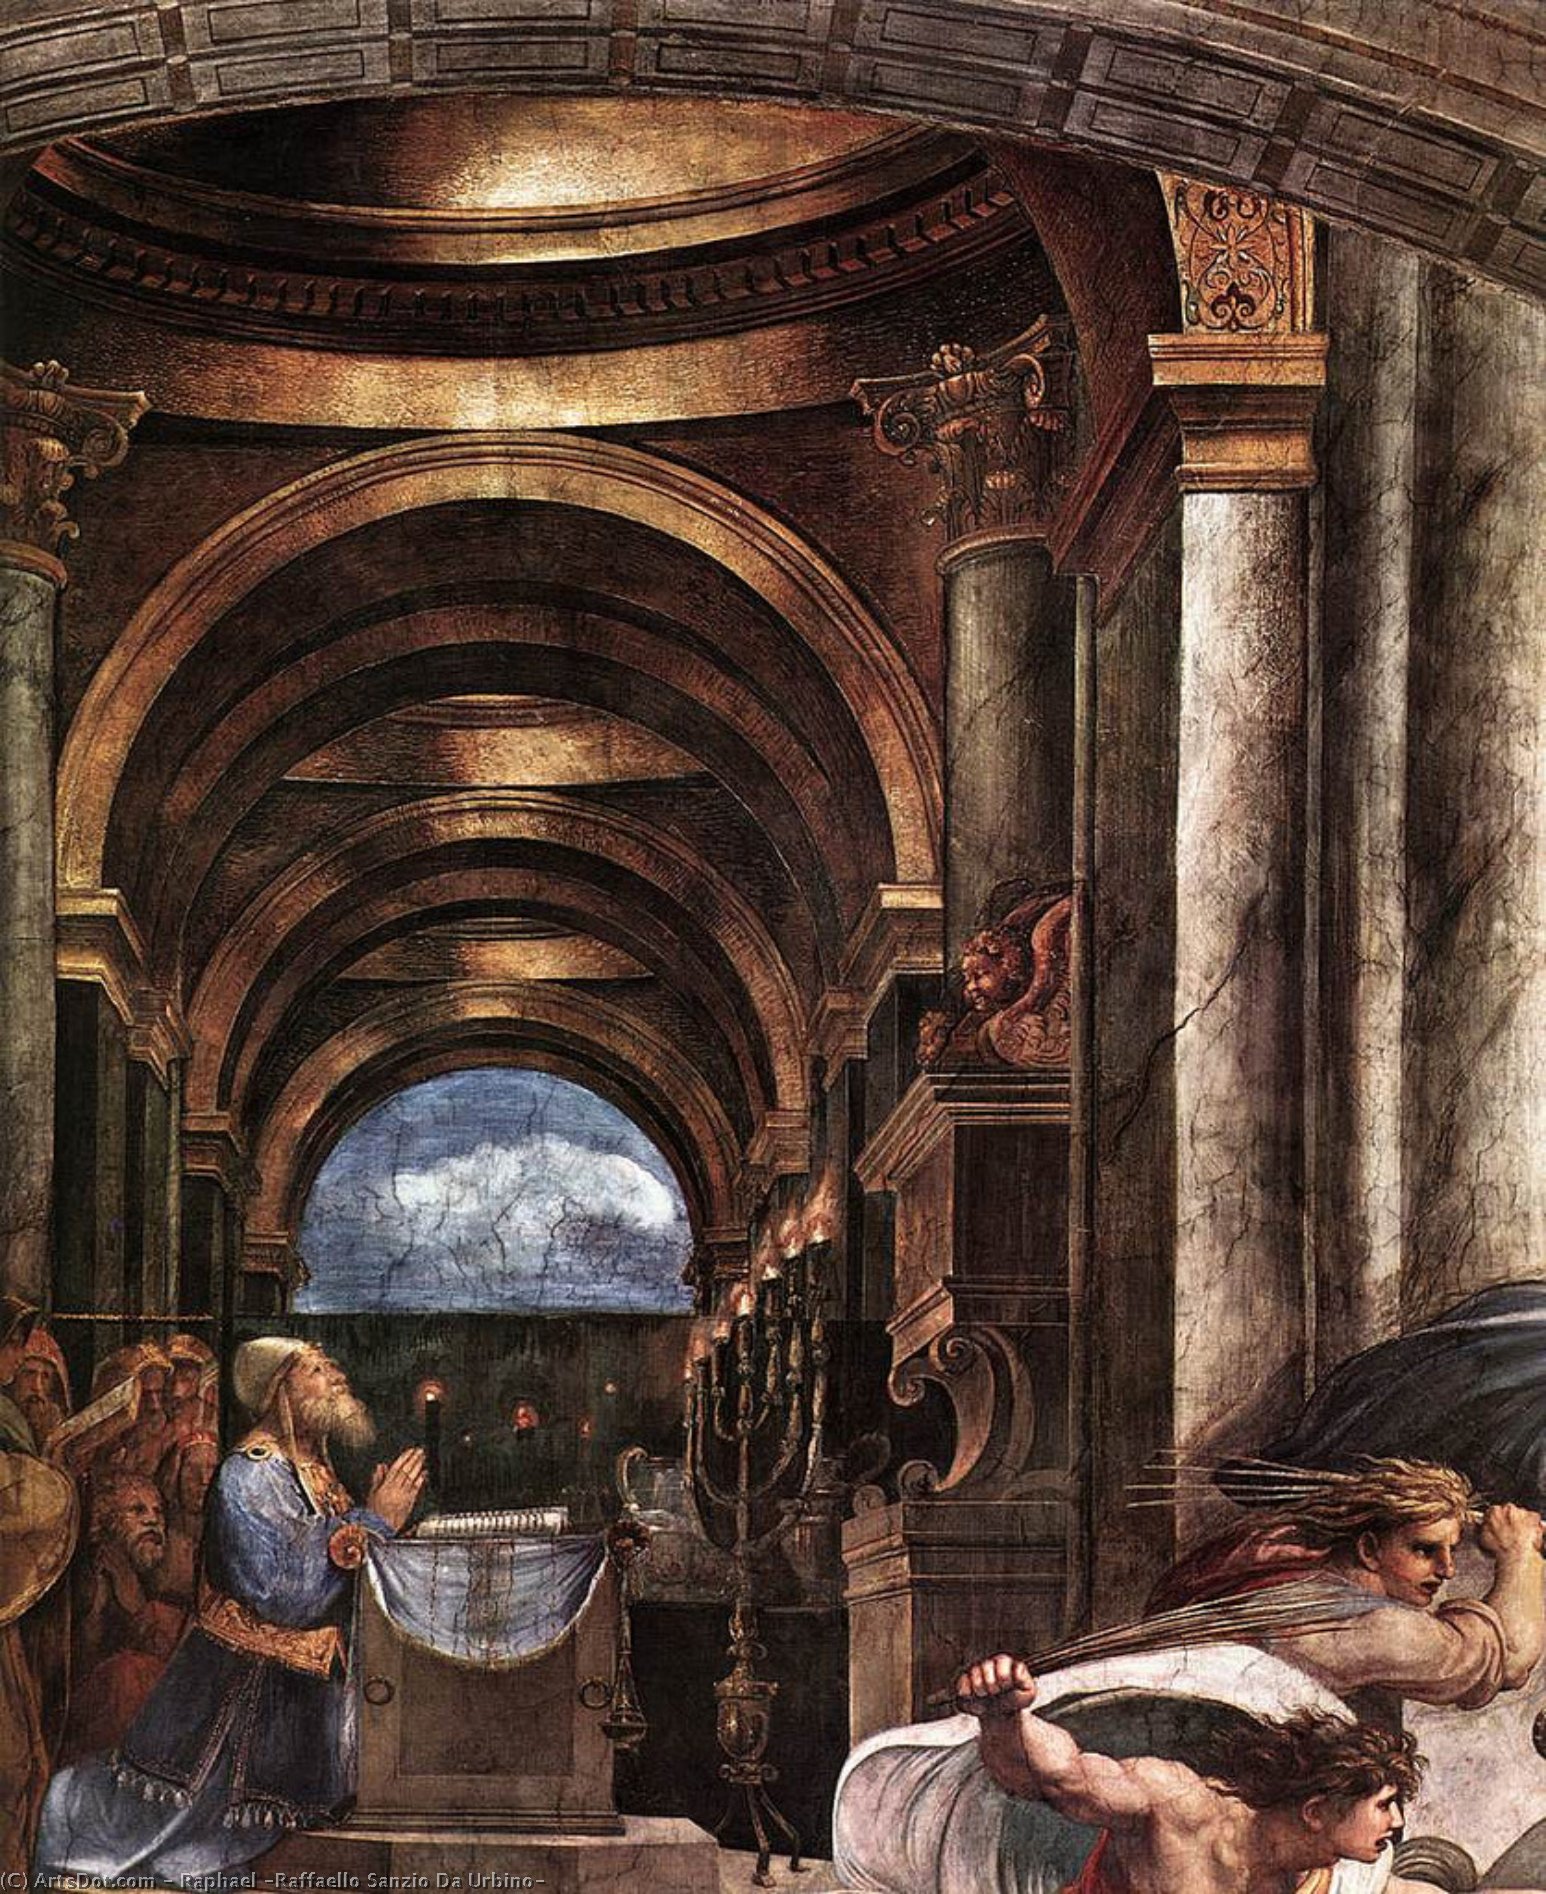 WikiOO.org - Encyclopedia of Fine Arts - Maleri, Artwork Raphael (Raffaello Sanzio Da Urbino) - Stanze Vaticane - The Expulsion of Heliodorus from the Temple (detail) [02]